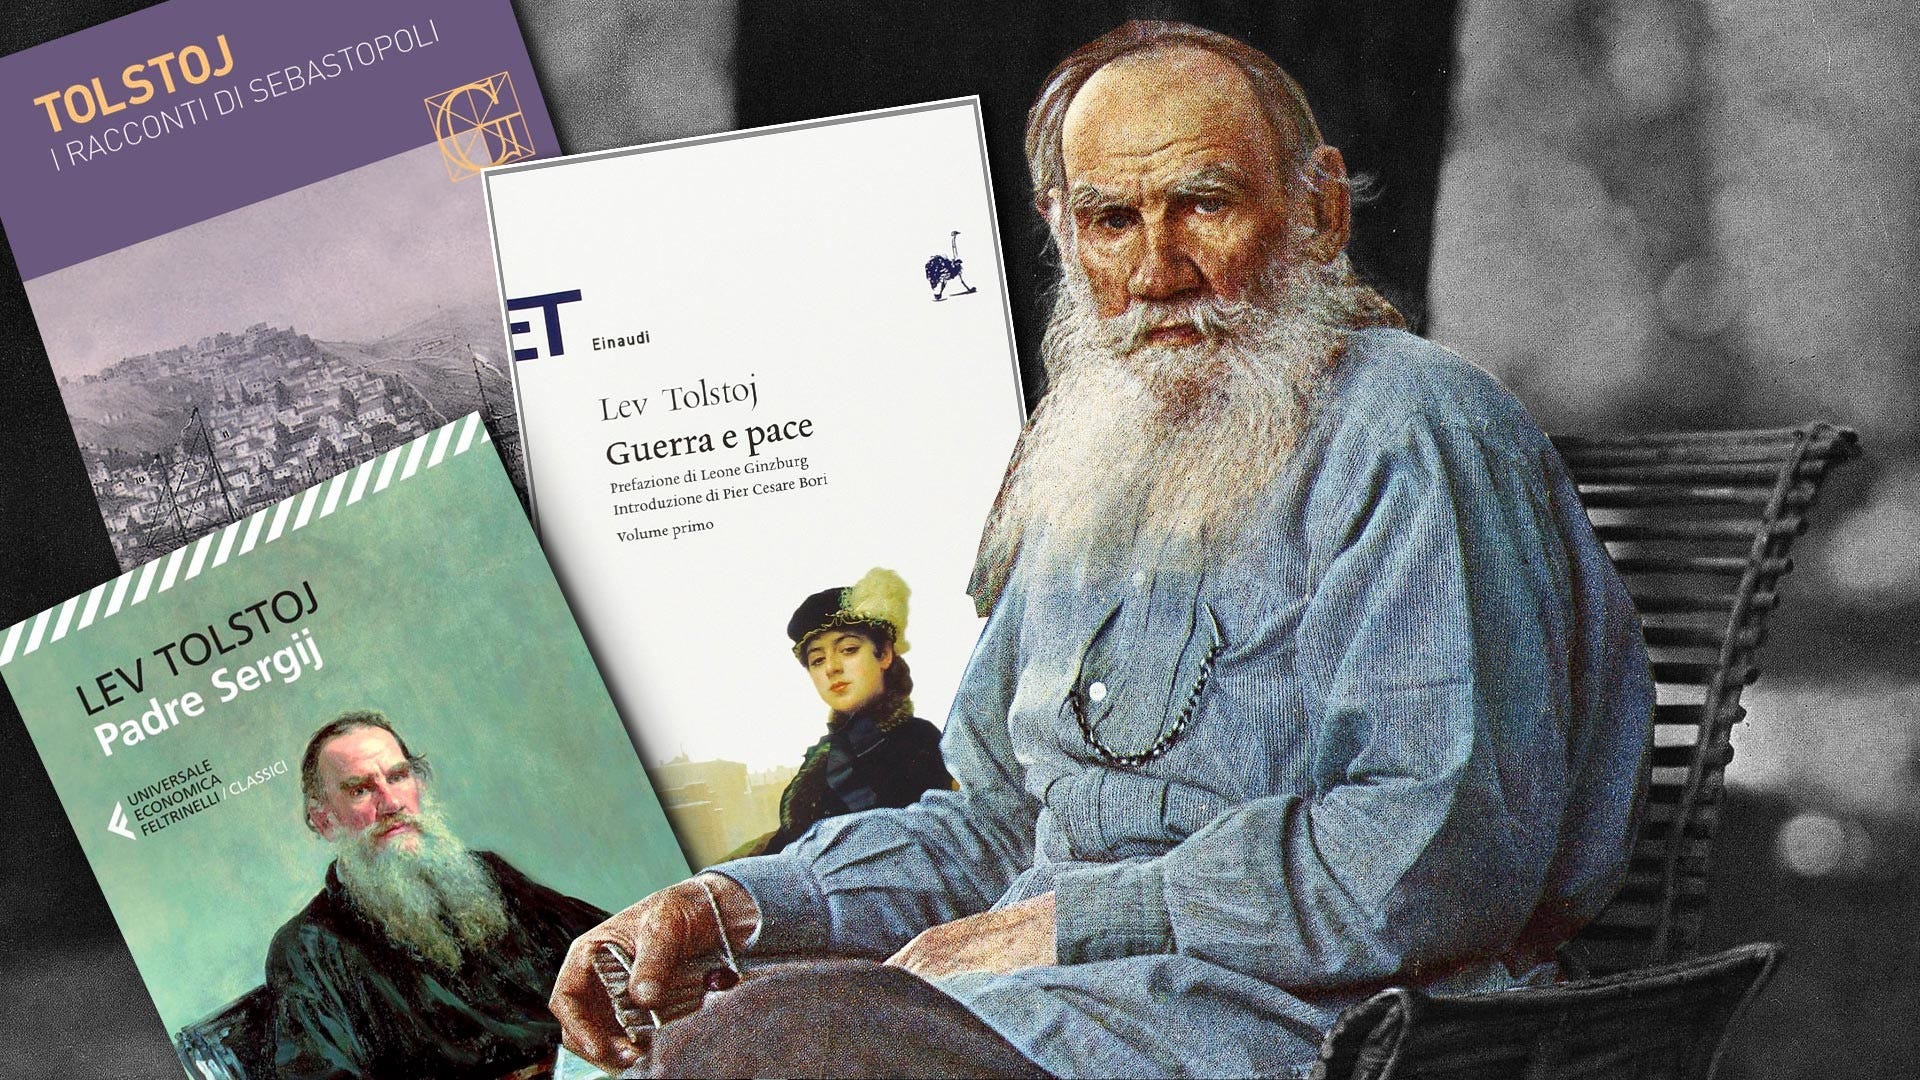 Chi cancella Tolstoj vuole disfarsi di un pezzo di cultura europea